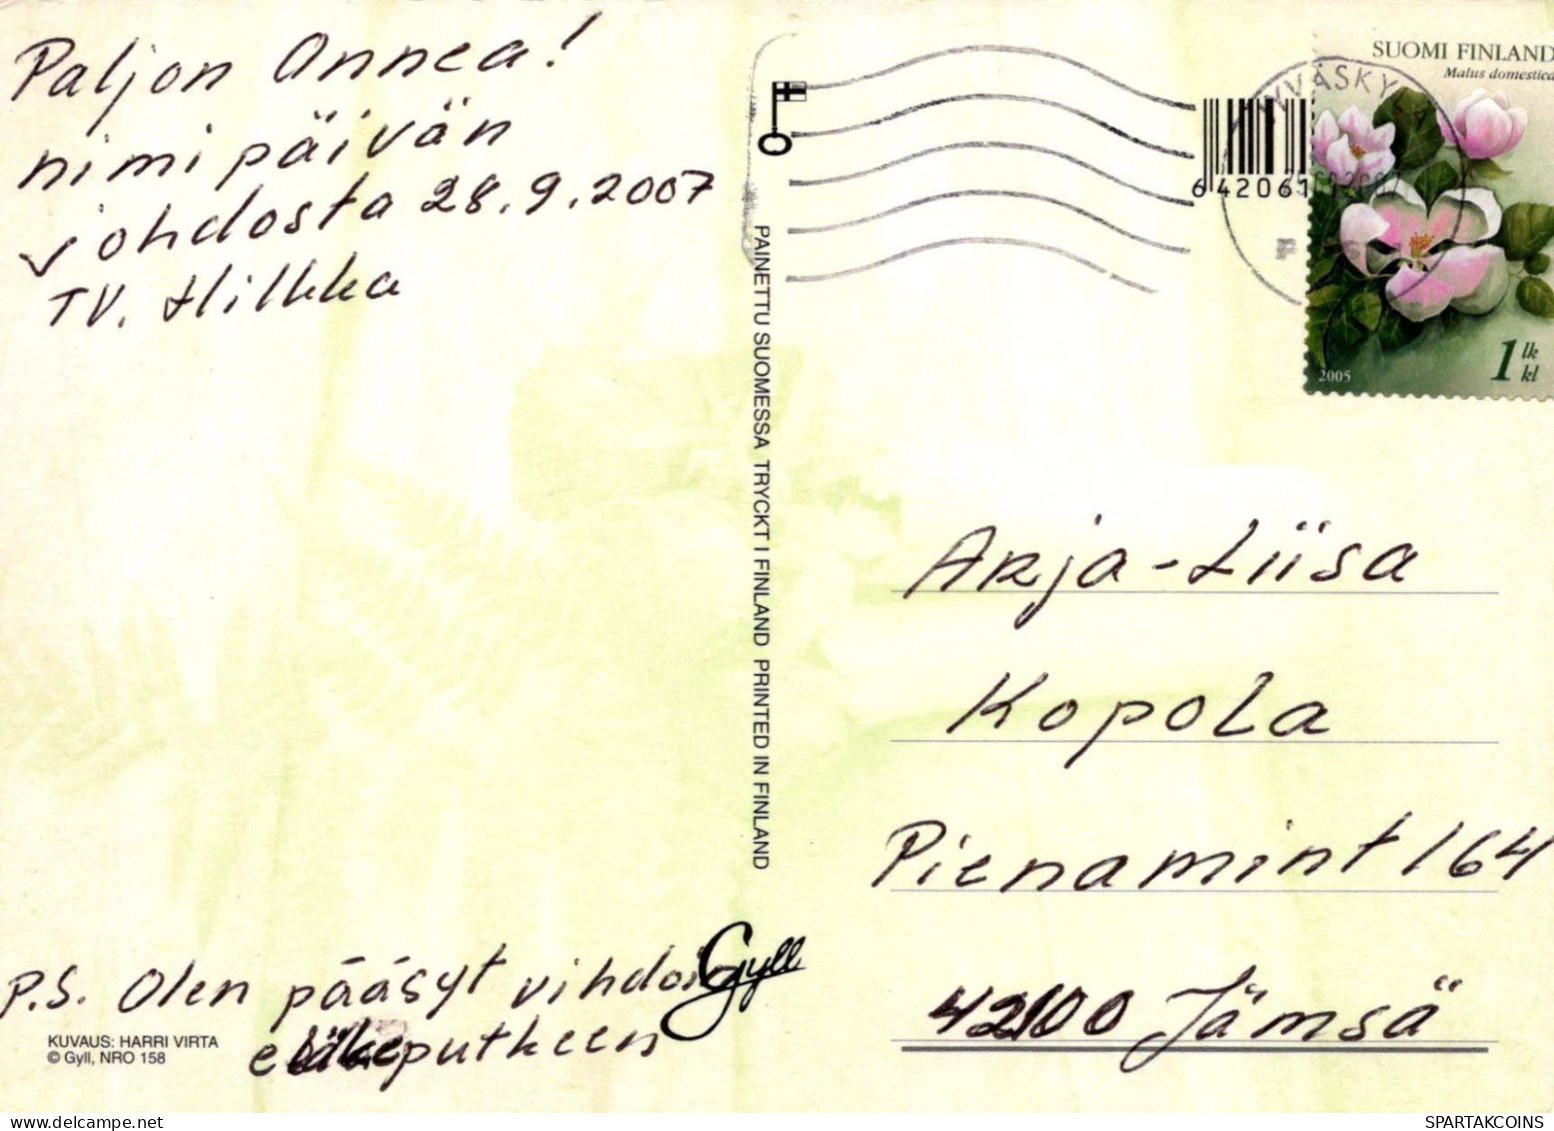 FLEURS Vintage Carte Postale CPSM #PBZ113.FR - Fleurs